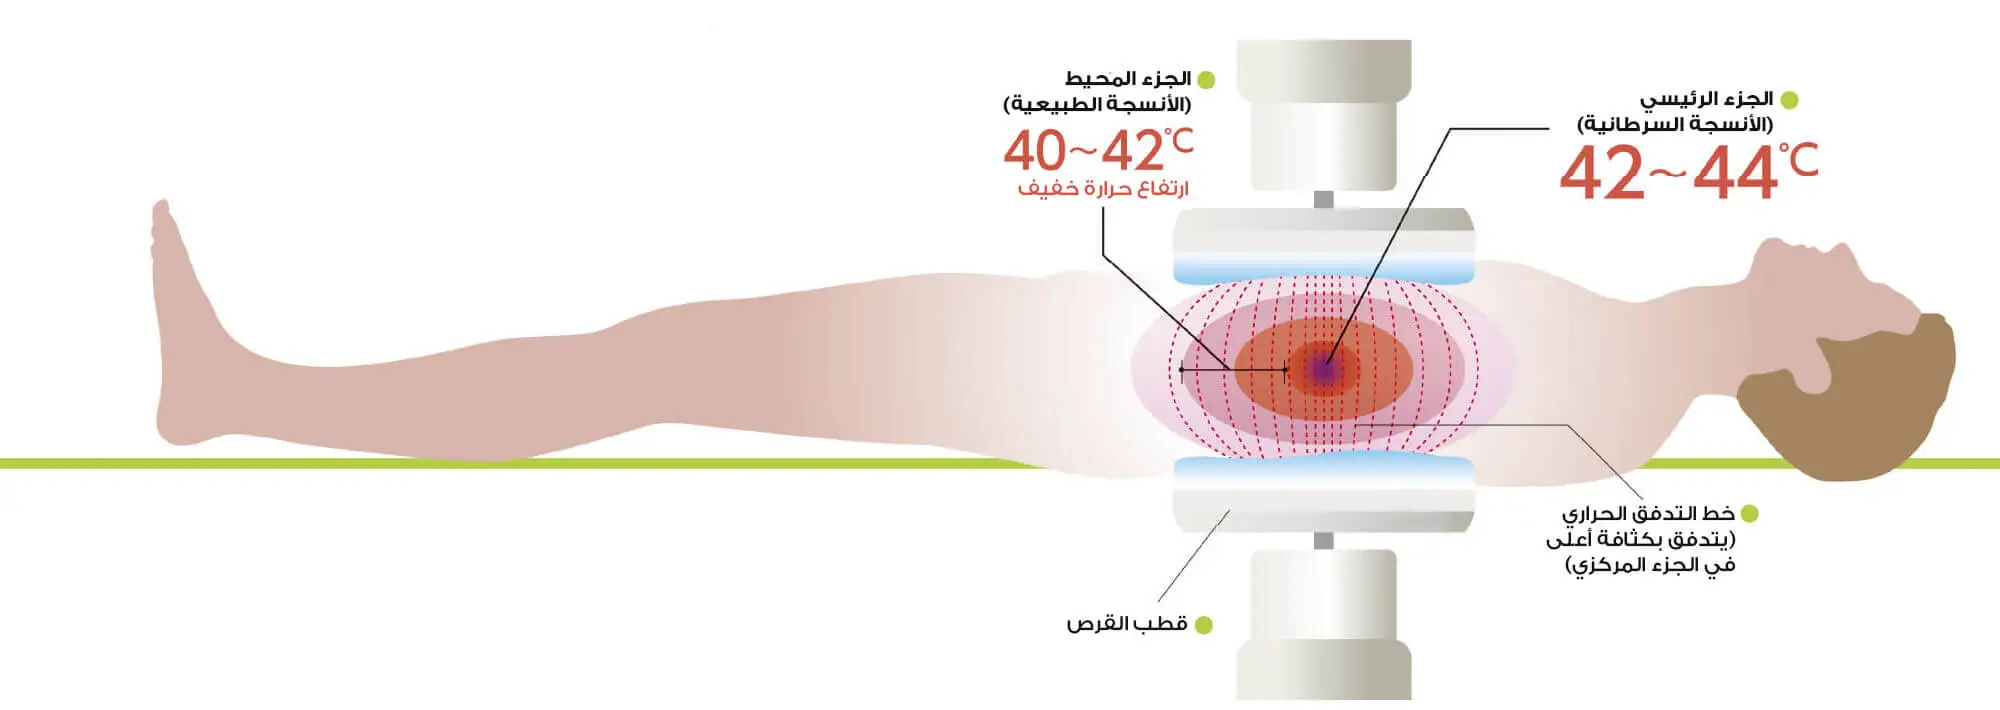 صورة لآلية عمل العلاج الحراري للسرطان وتركيز الحرارة على منطقة الورم